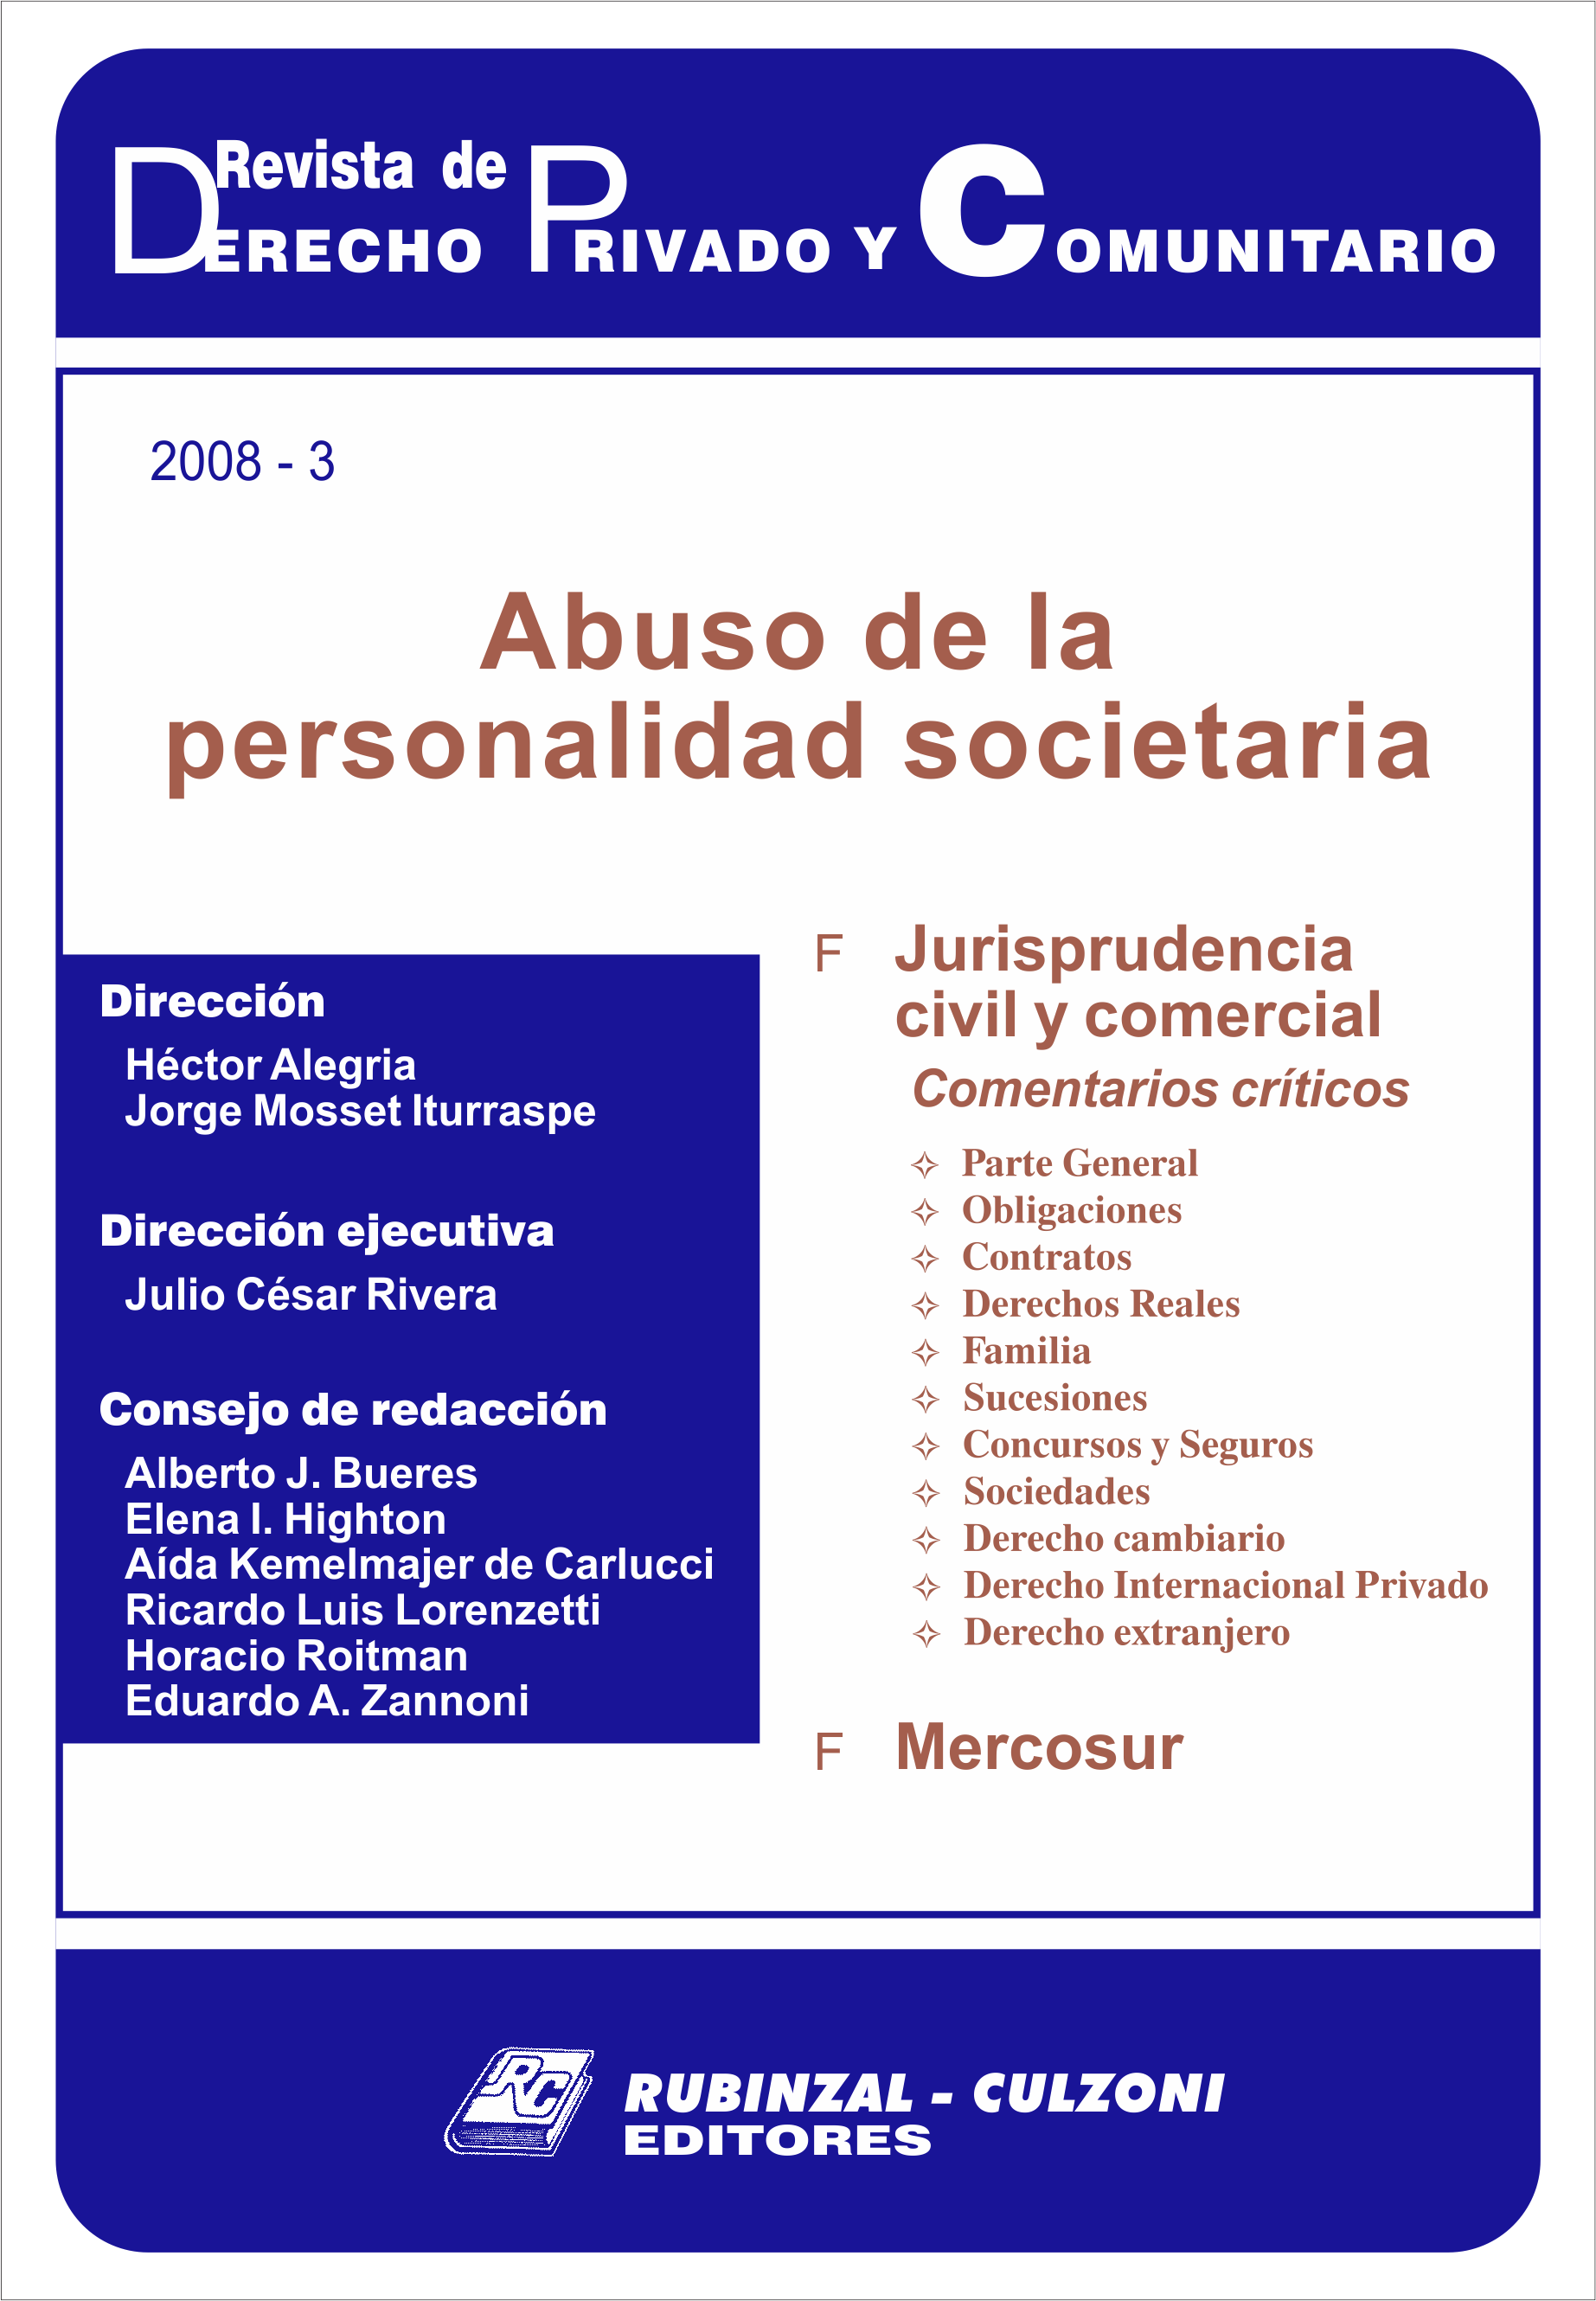 Revista de Derecho Privado y Comunitario - Abuso de la personalidad societaria.